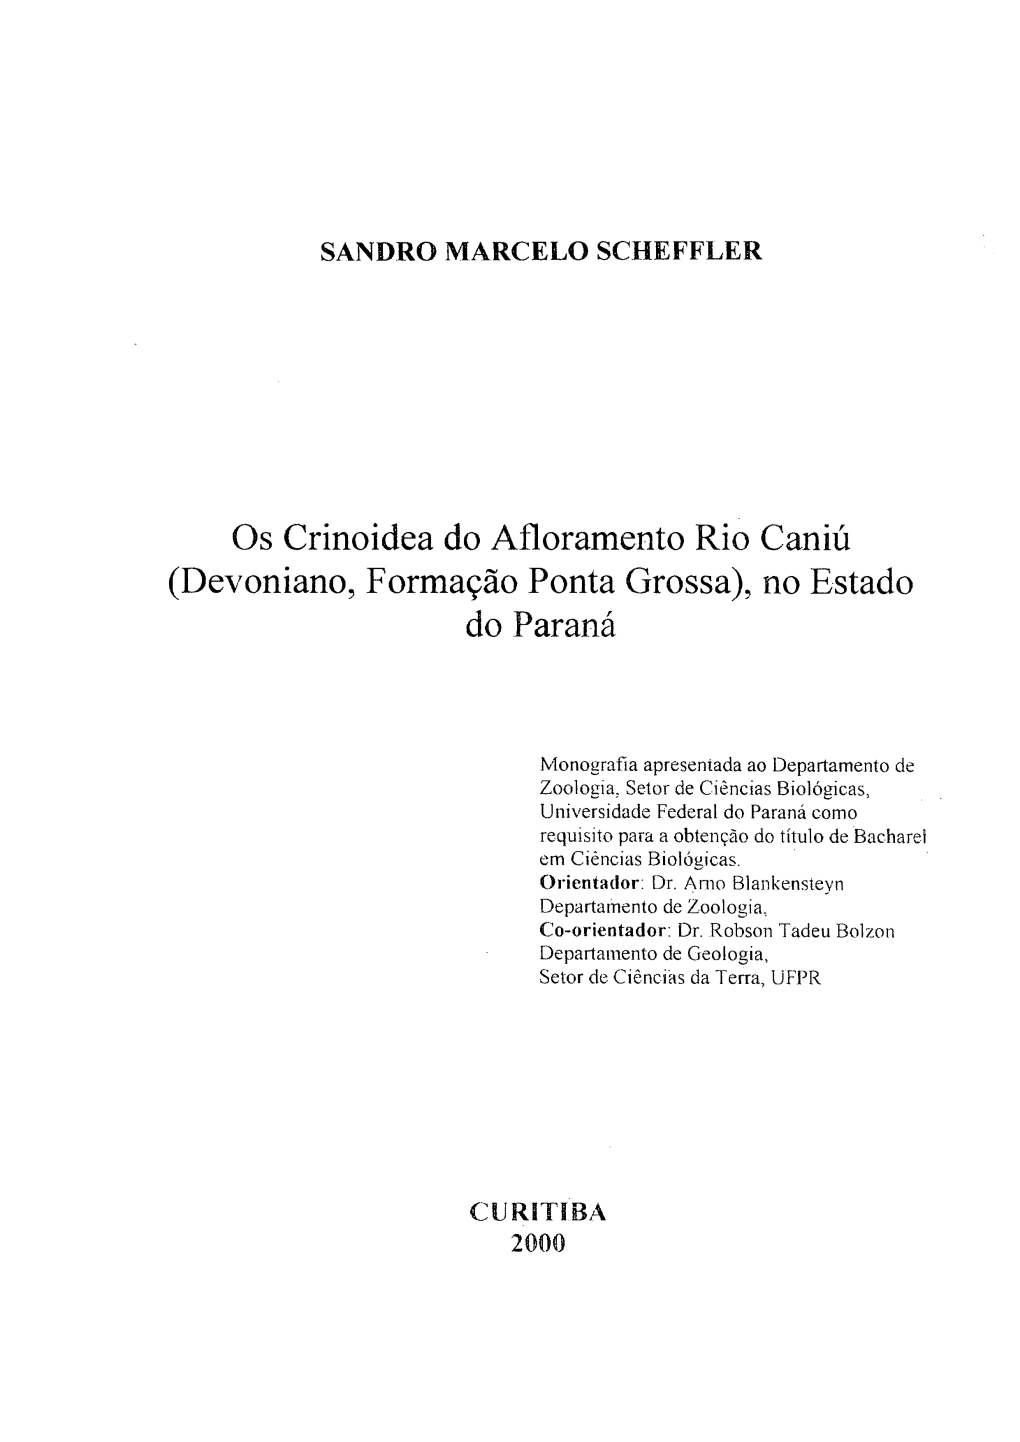 Os Crinoidea Do Afloramento Rio Caniú (Devoniano, Formação Ponta Grossa), No Estado Do Paraná